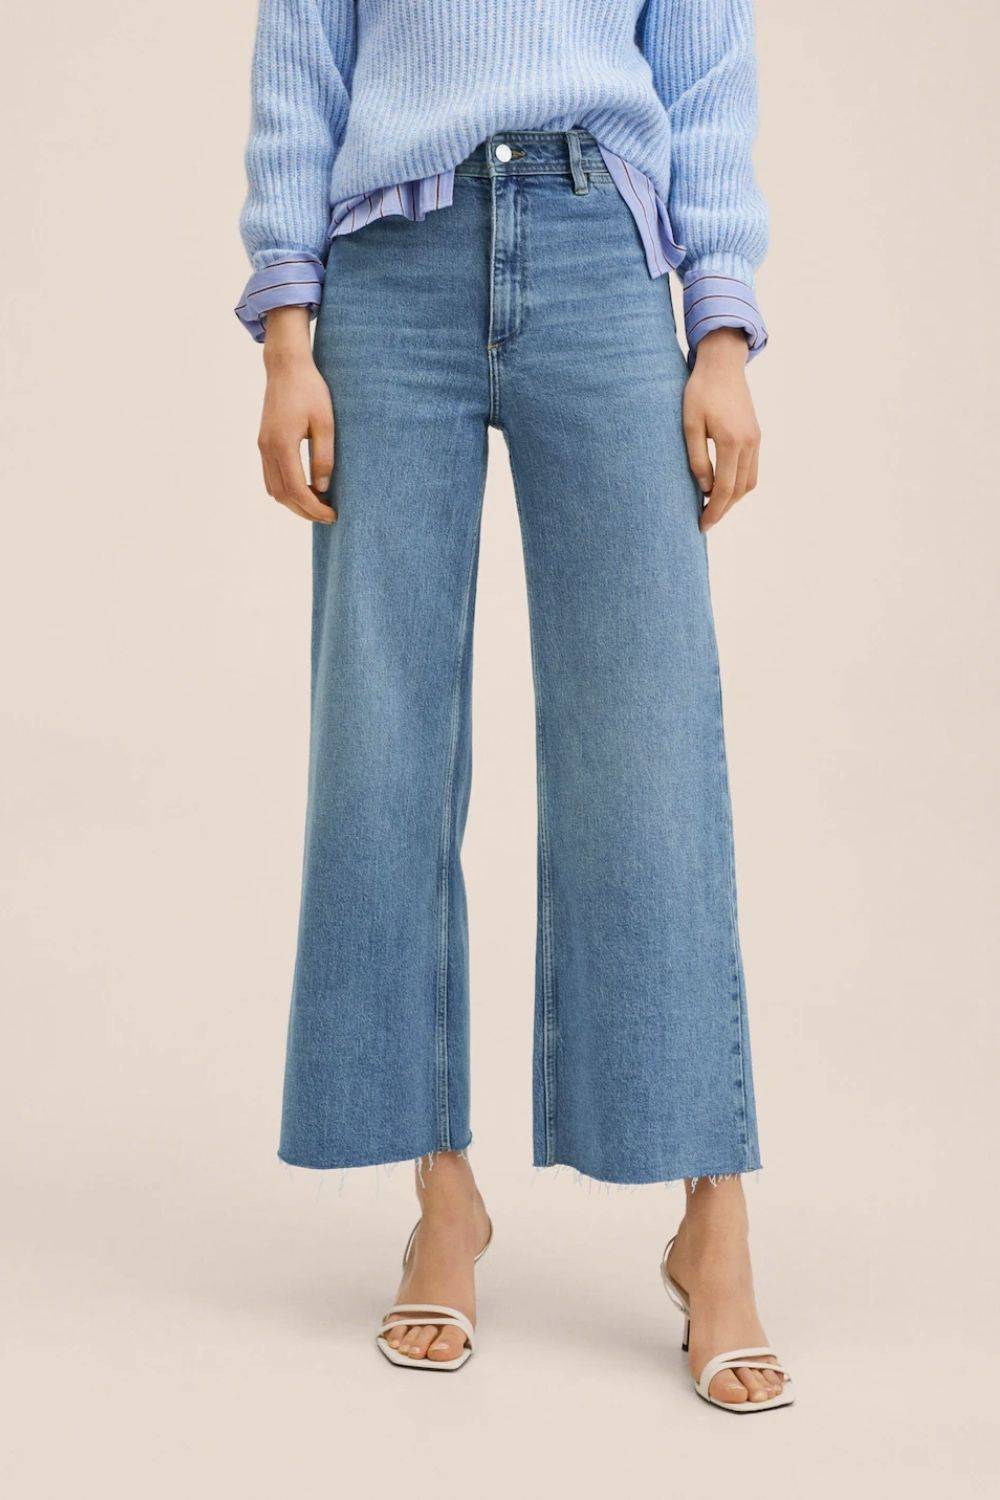 10 pantalones culotte que hacen más estilizan cómo llevarlos)